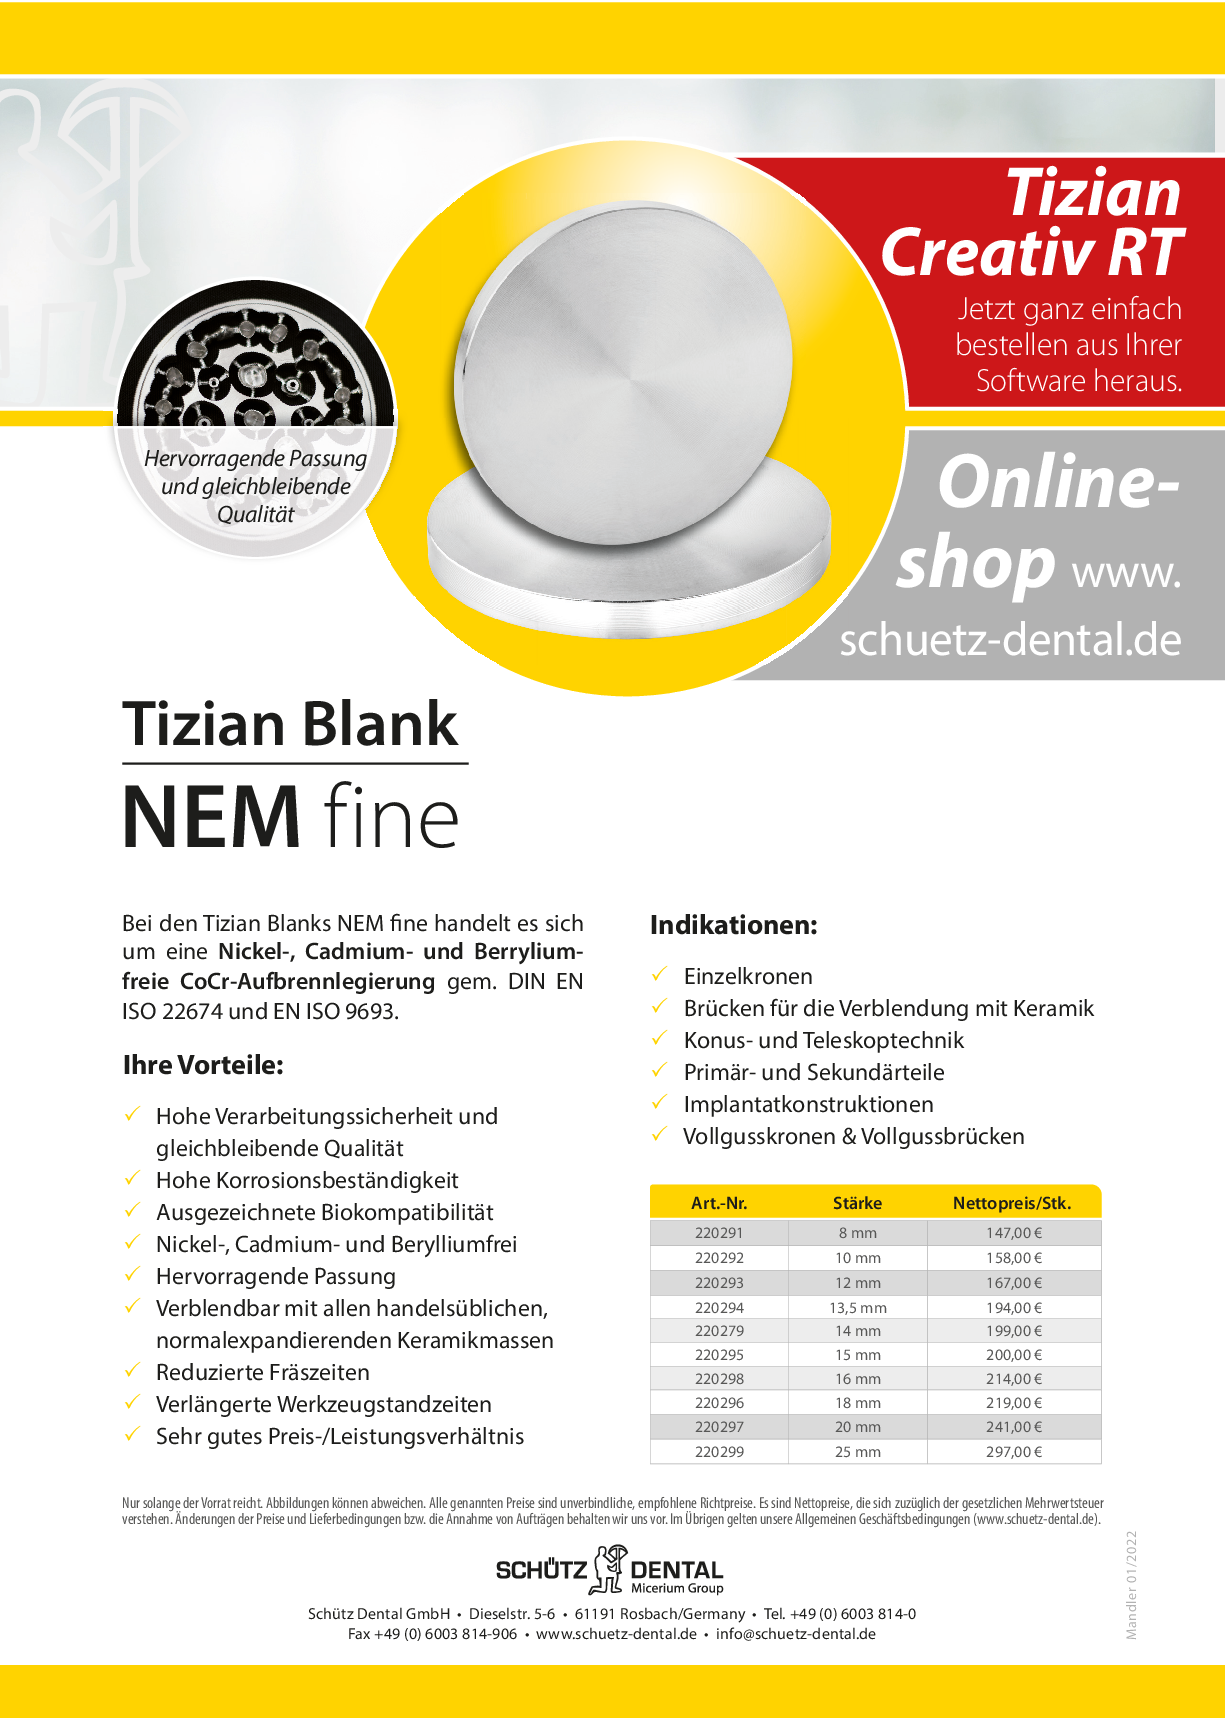 Tizian Blank NEM fine Flyer inkl. Anleitung (deutsch)